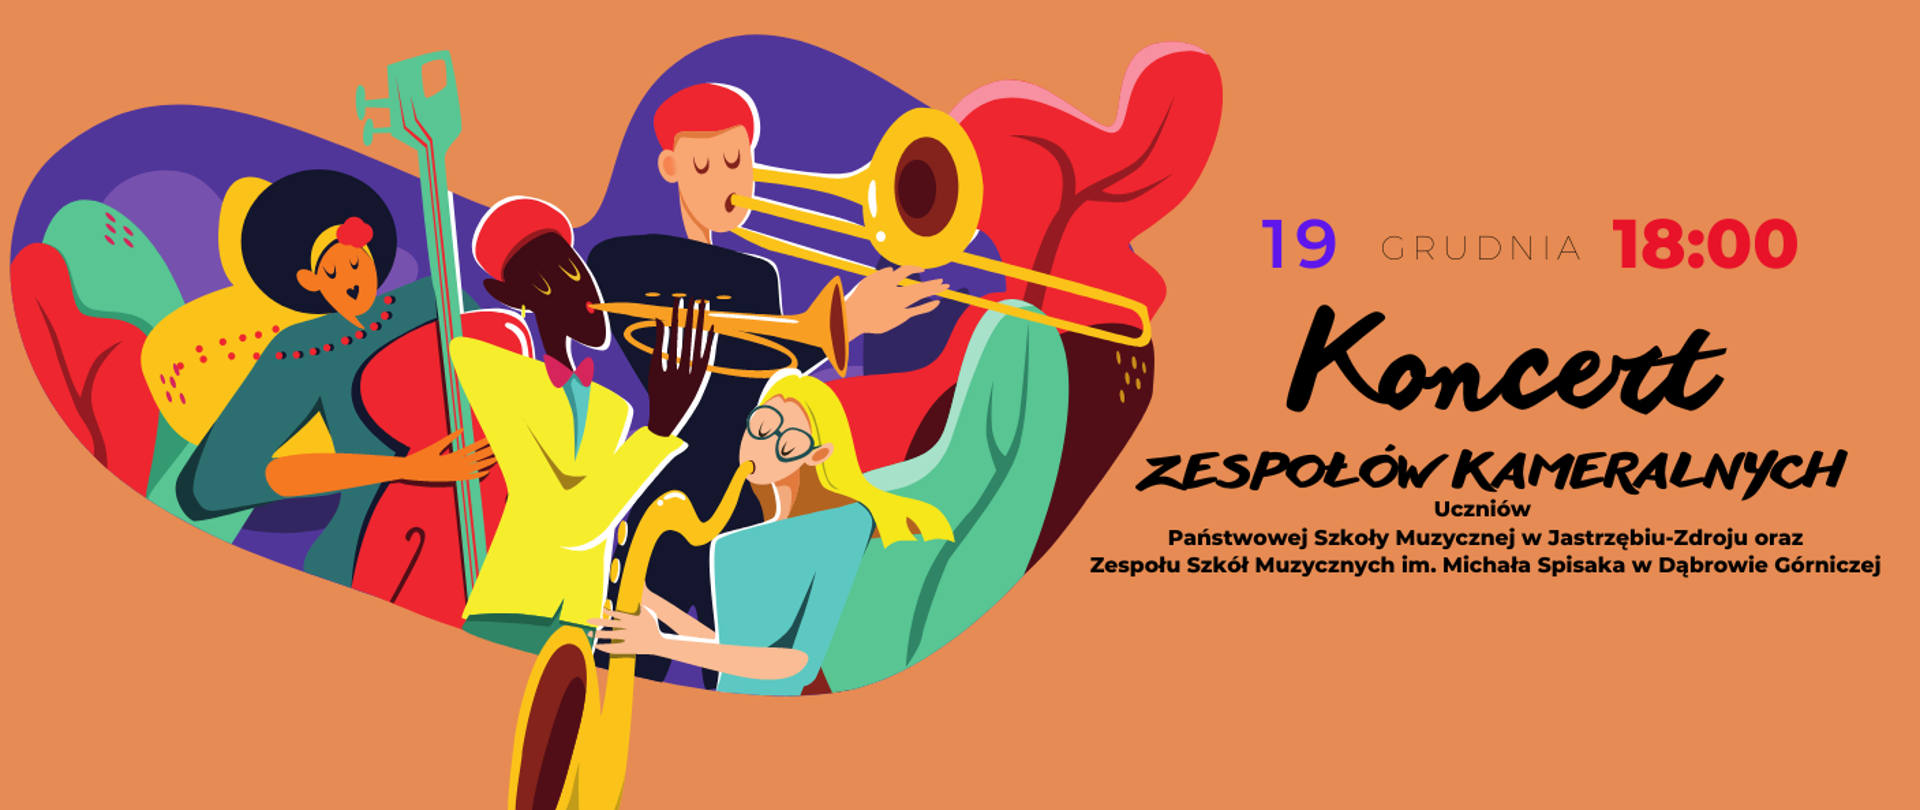 Zaproszenie na koncert zespołów kameralnych 19.12.2022 godz. 18.00 Na pomarańczowym tle grafika z grającymi osobami na różnych instrumentach.